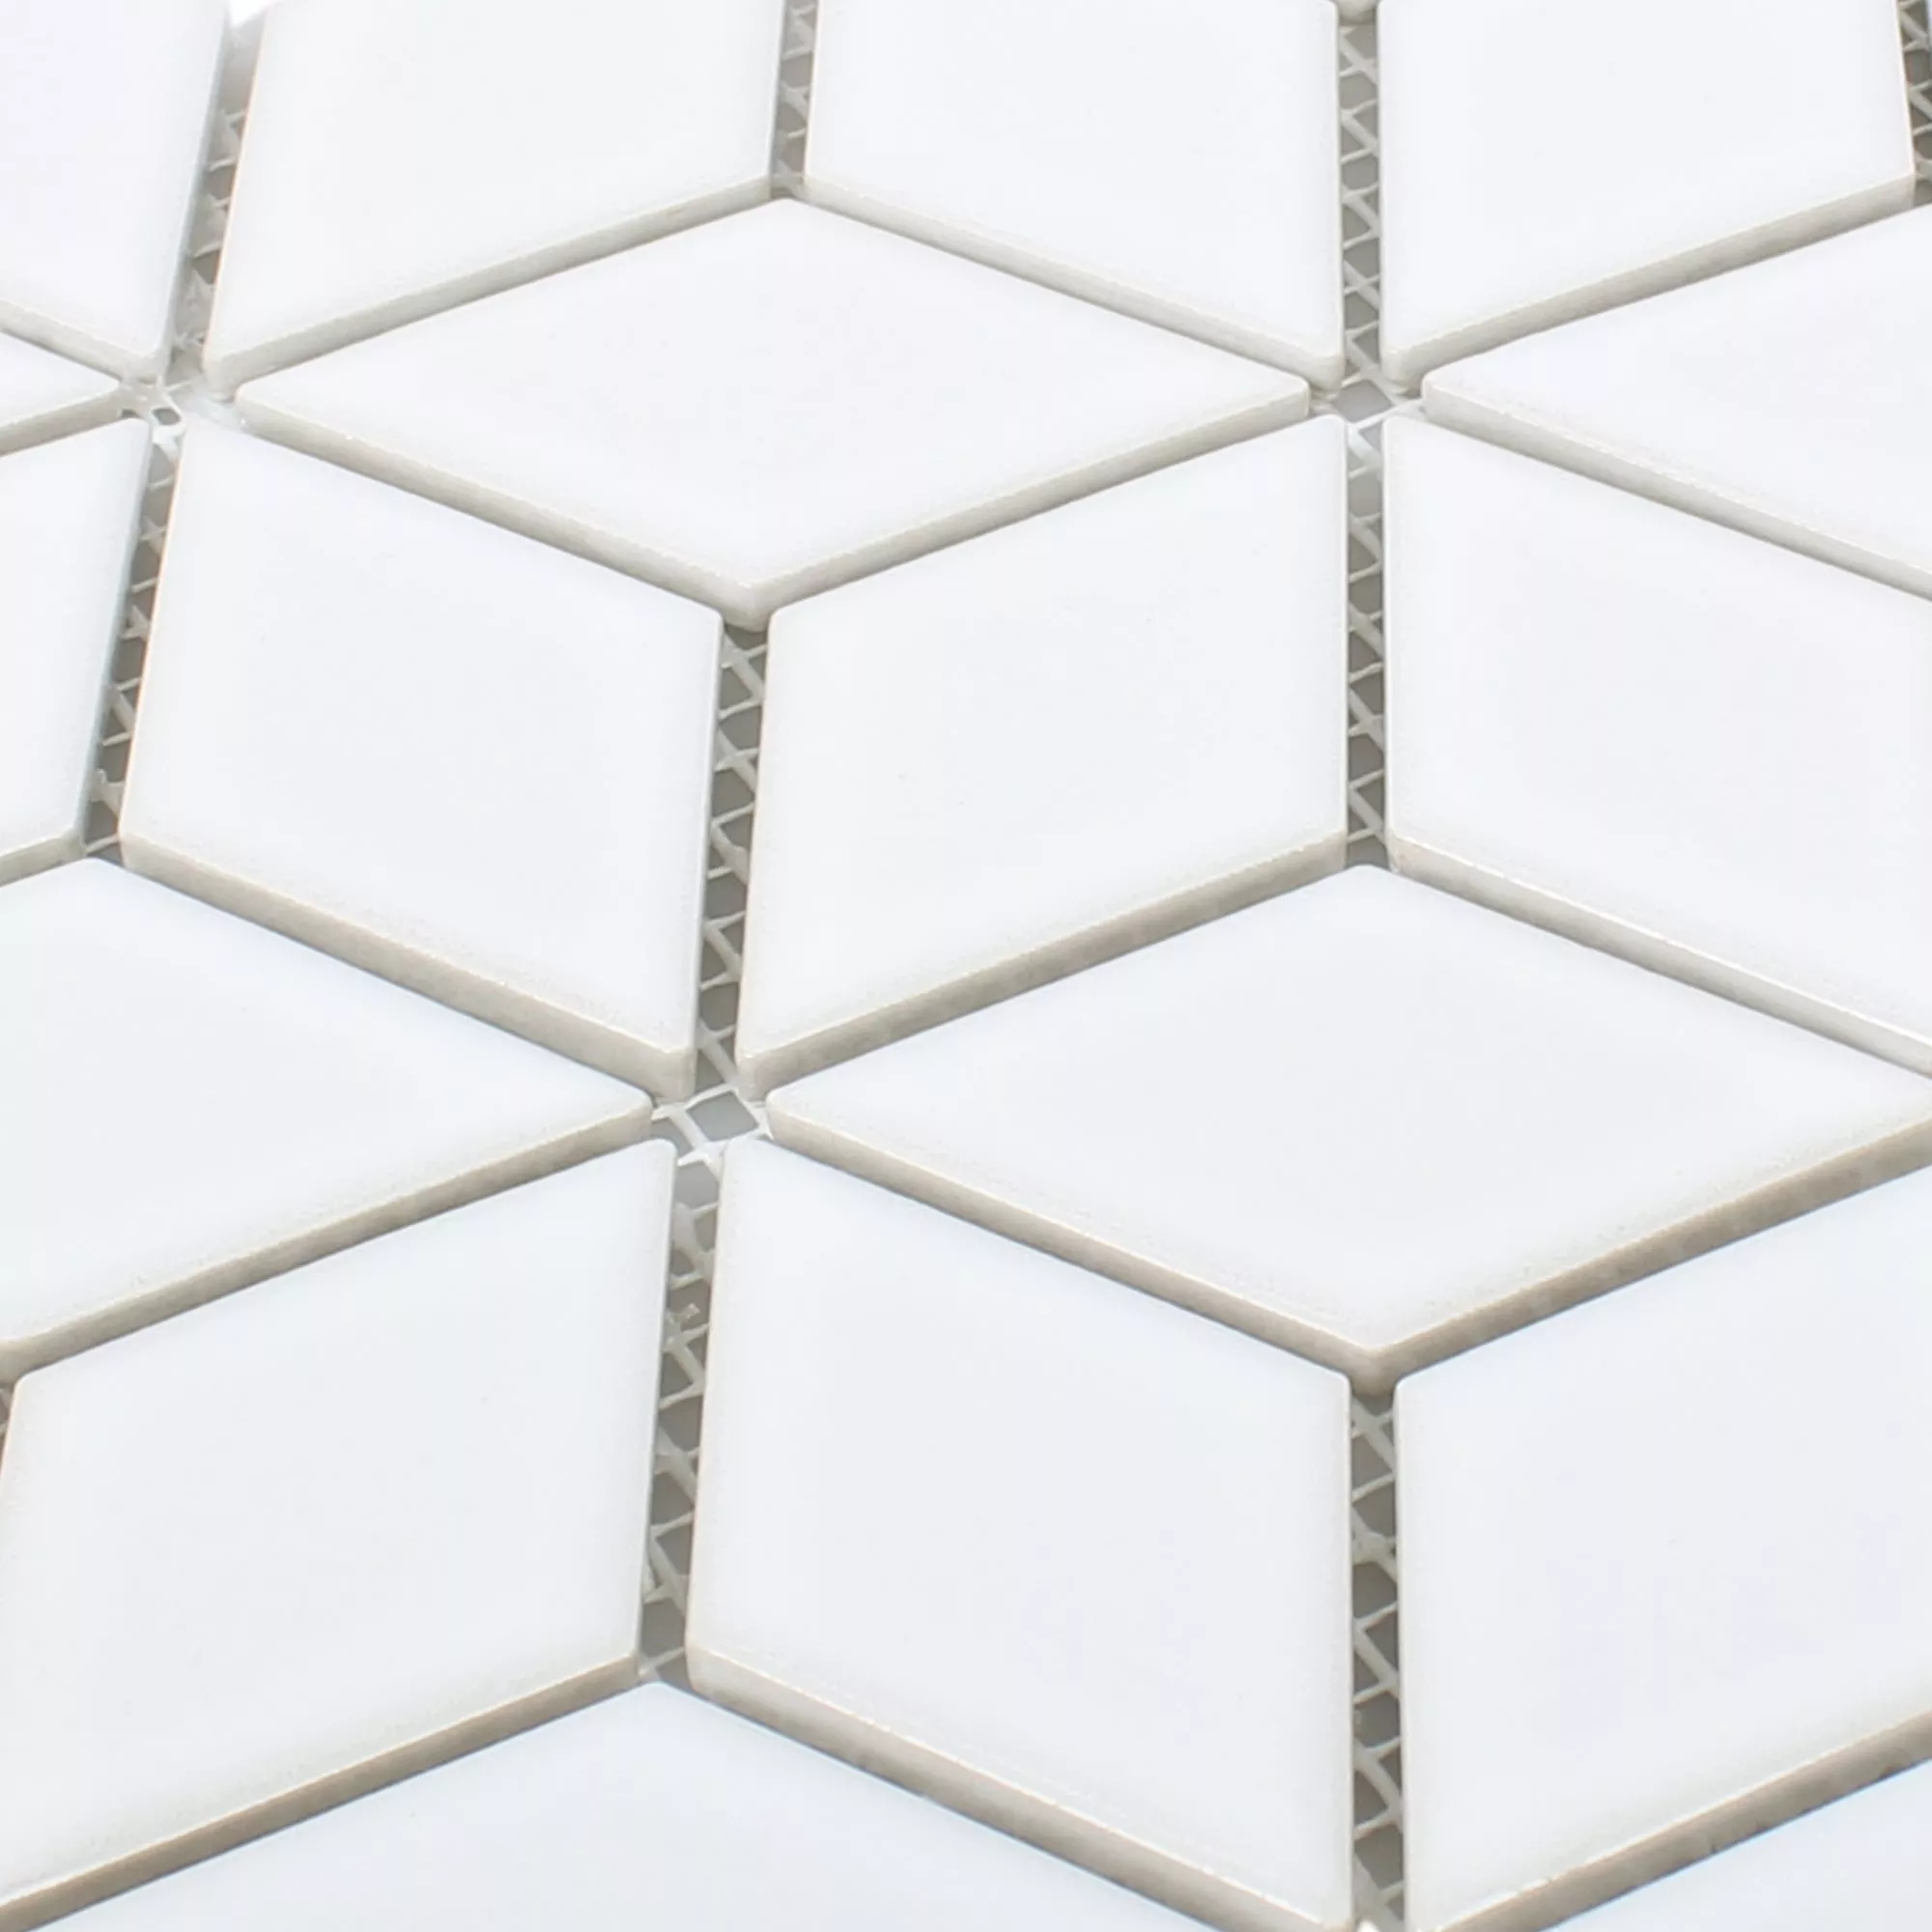 Fazekasság Mozaik Csempe Cavalier 3D Dobókocka Fehér Csillogó